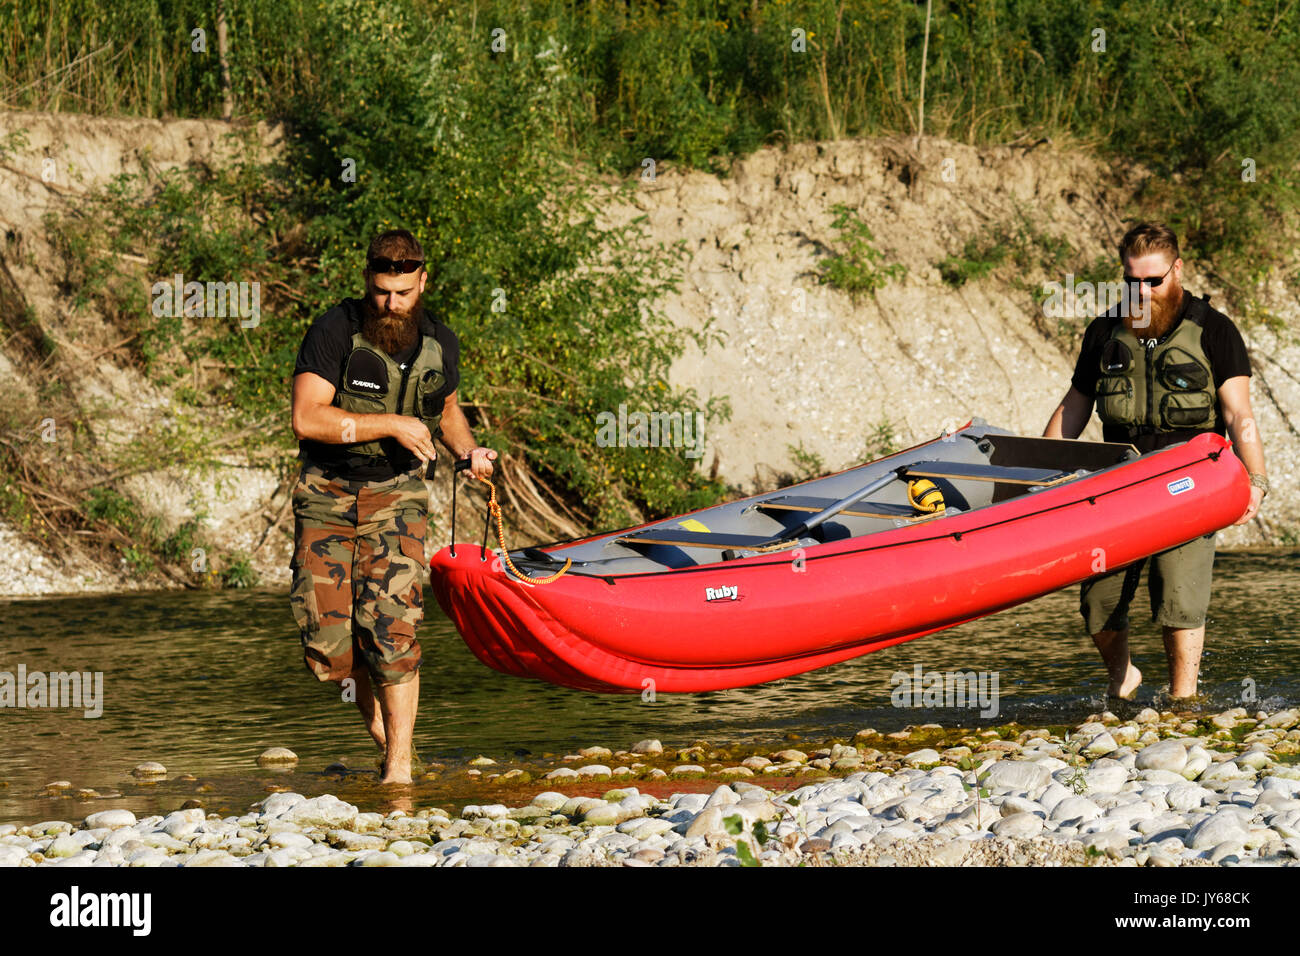 Canoa sul fiume Drava Foto Stock